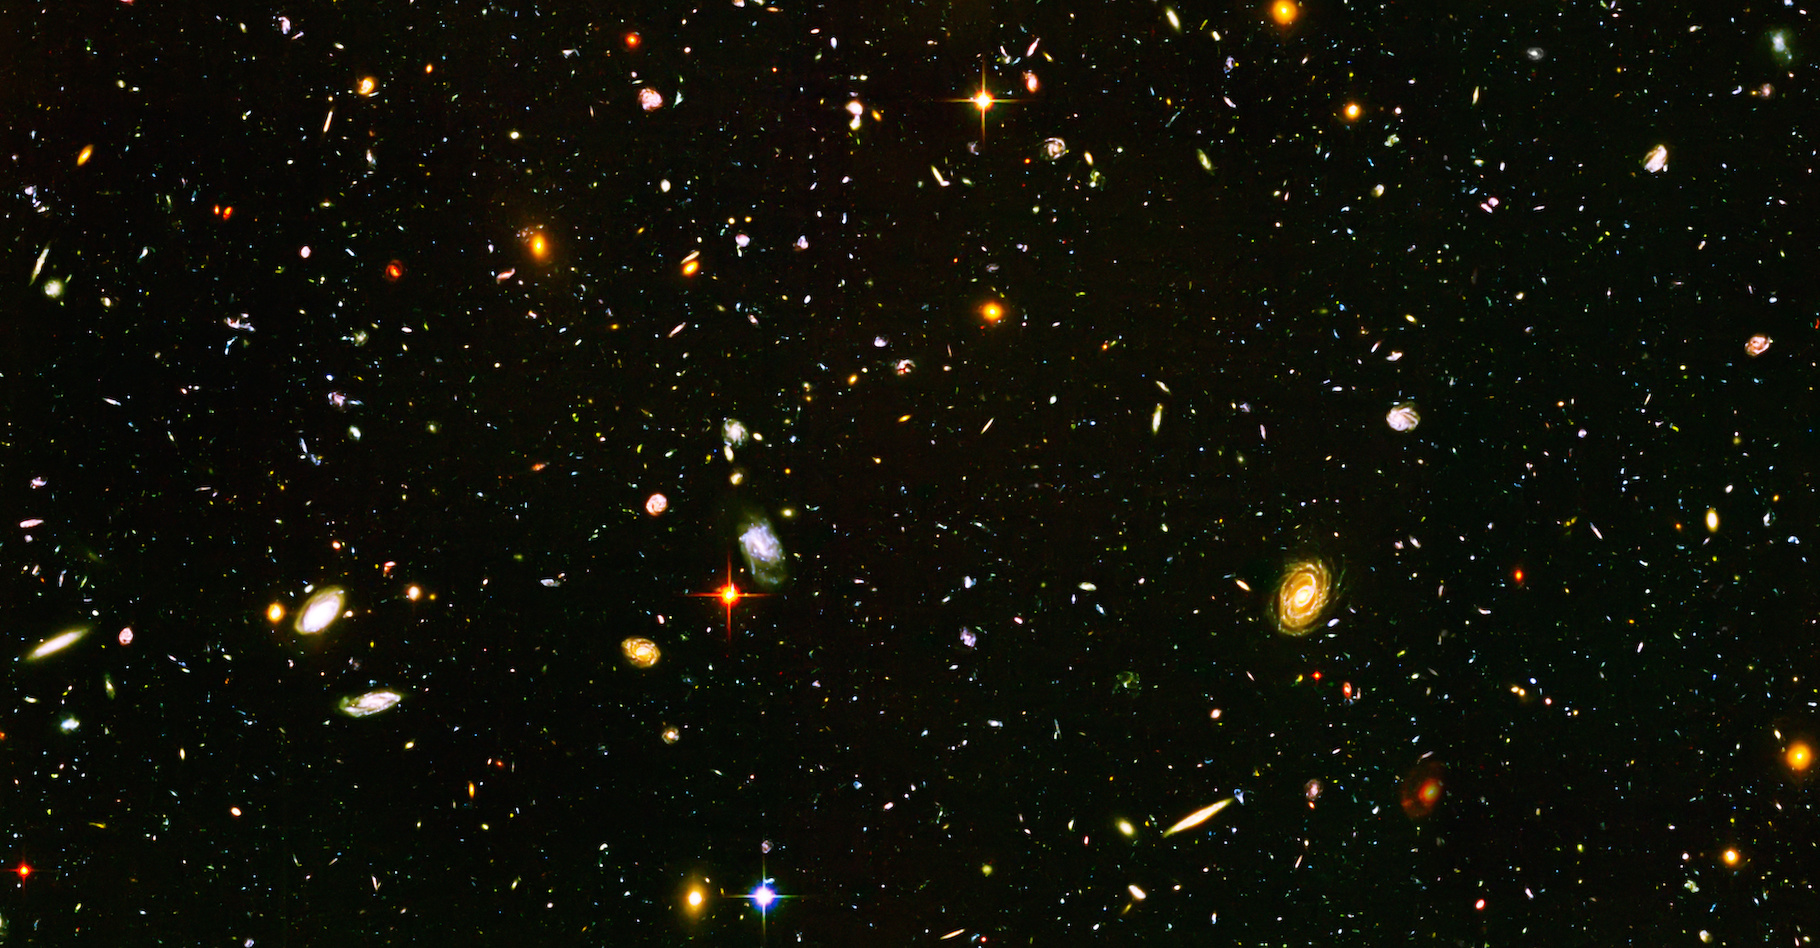 Des astronomes de l’université du Lancashire central (Royaume-Uni) annoncent avoir observé un « Arc géant » de 3,3 milliards d’années-lumière de long. Une structure tellement immense qu’elle pourrait ébranler le principe cosmologique. © allexxandarx, Adobe Stock